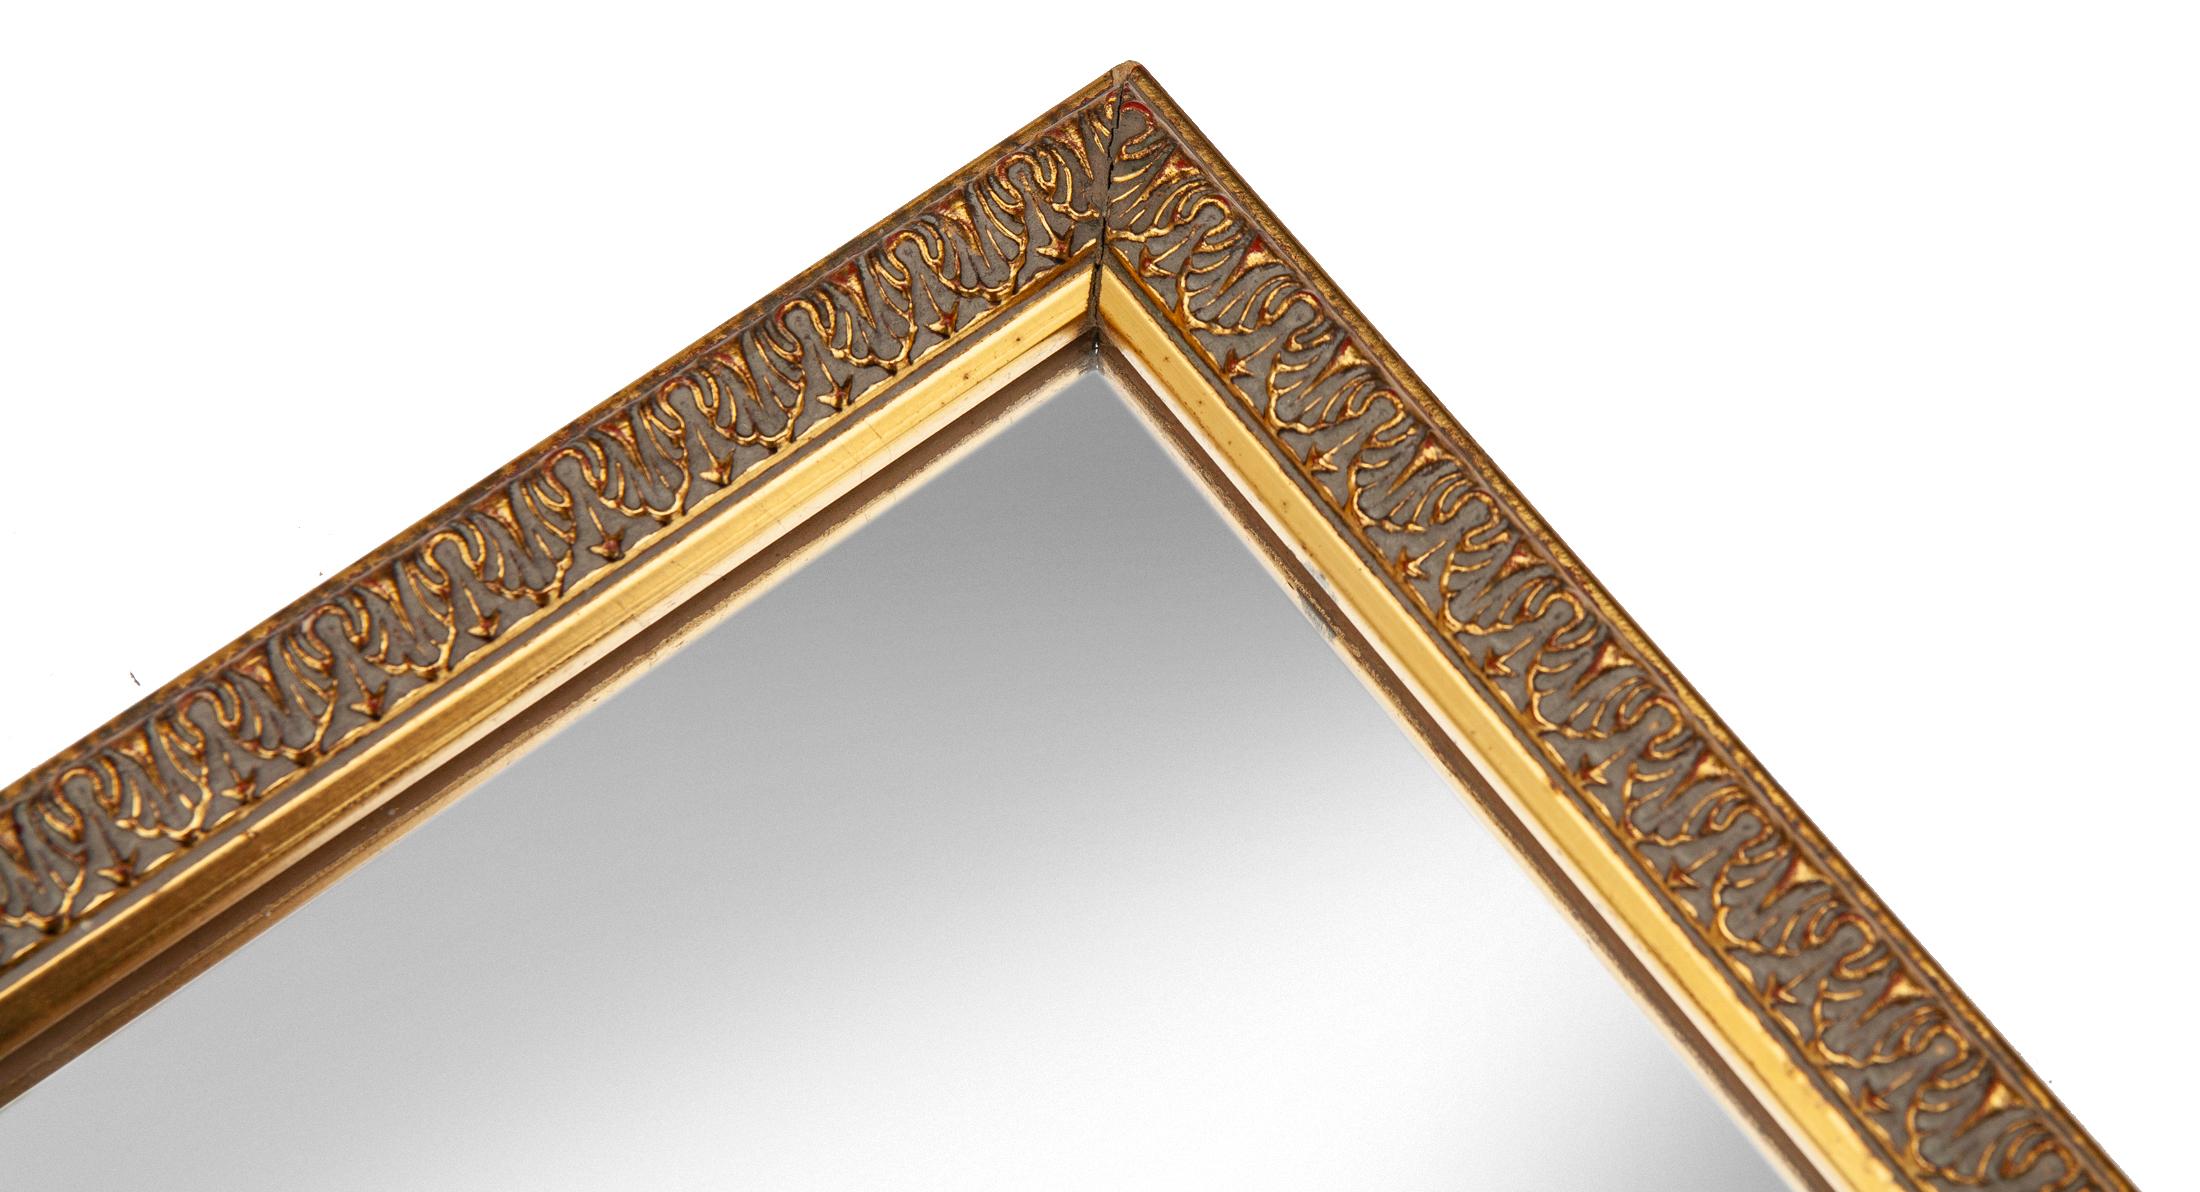 Miroir carré européen simple à encadrement doré avec un petit motif provincial répétitif.
